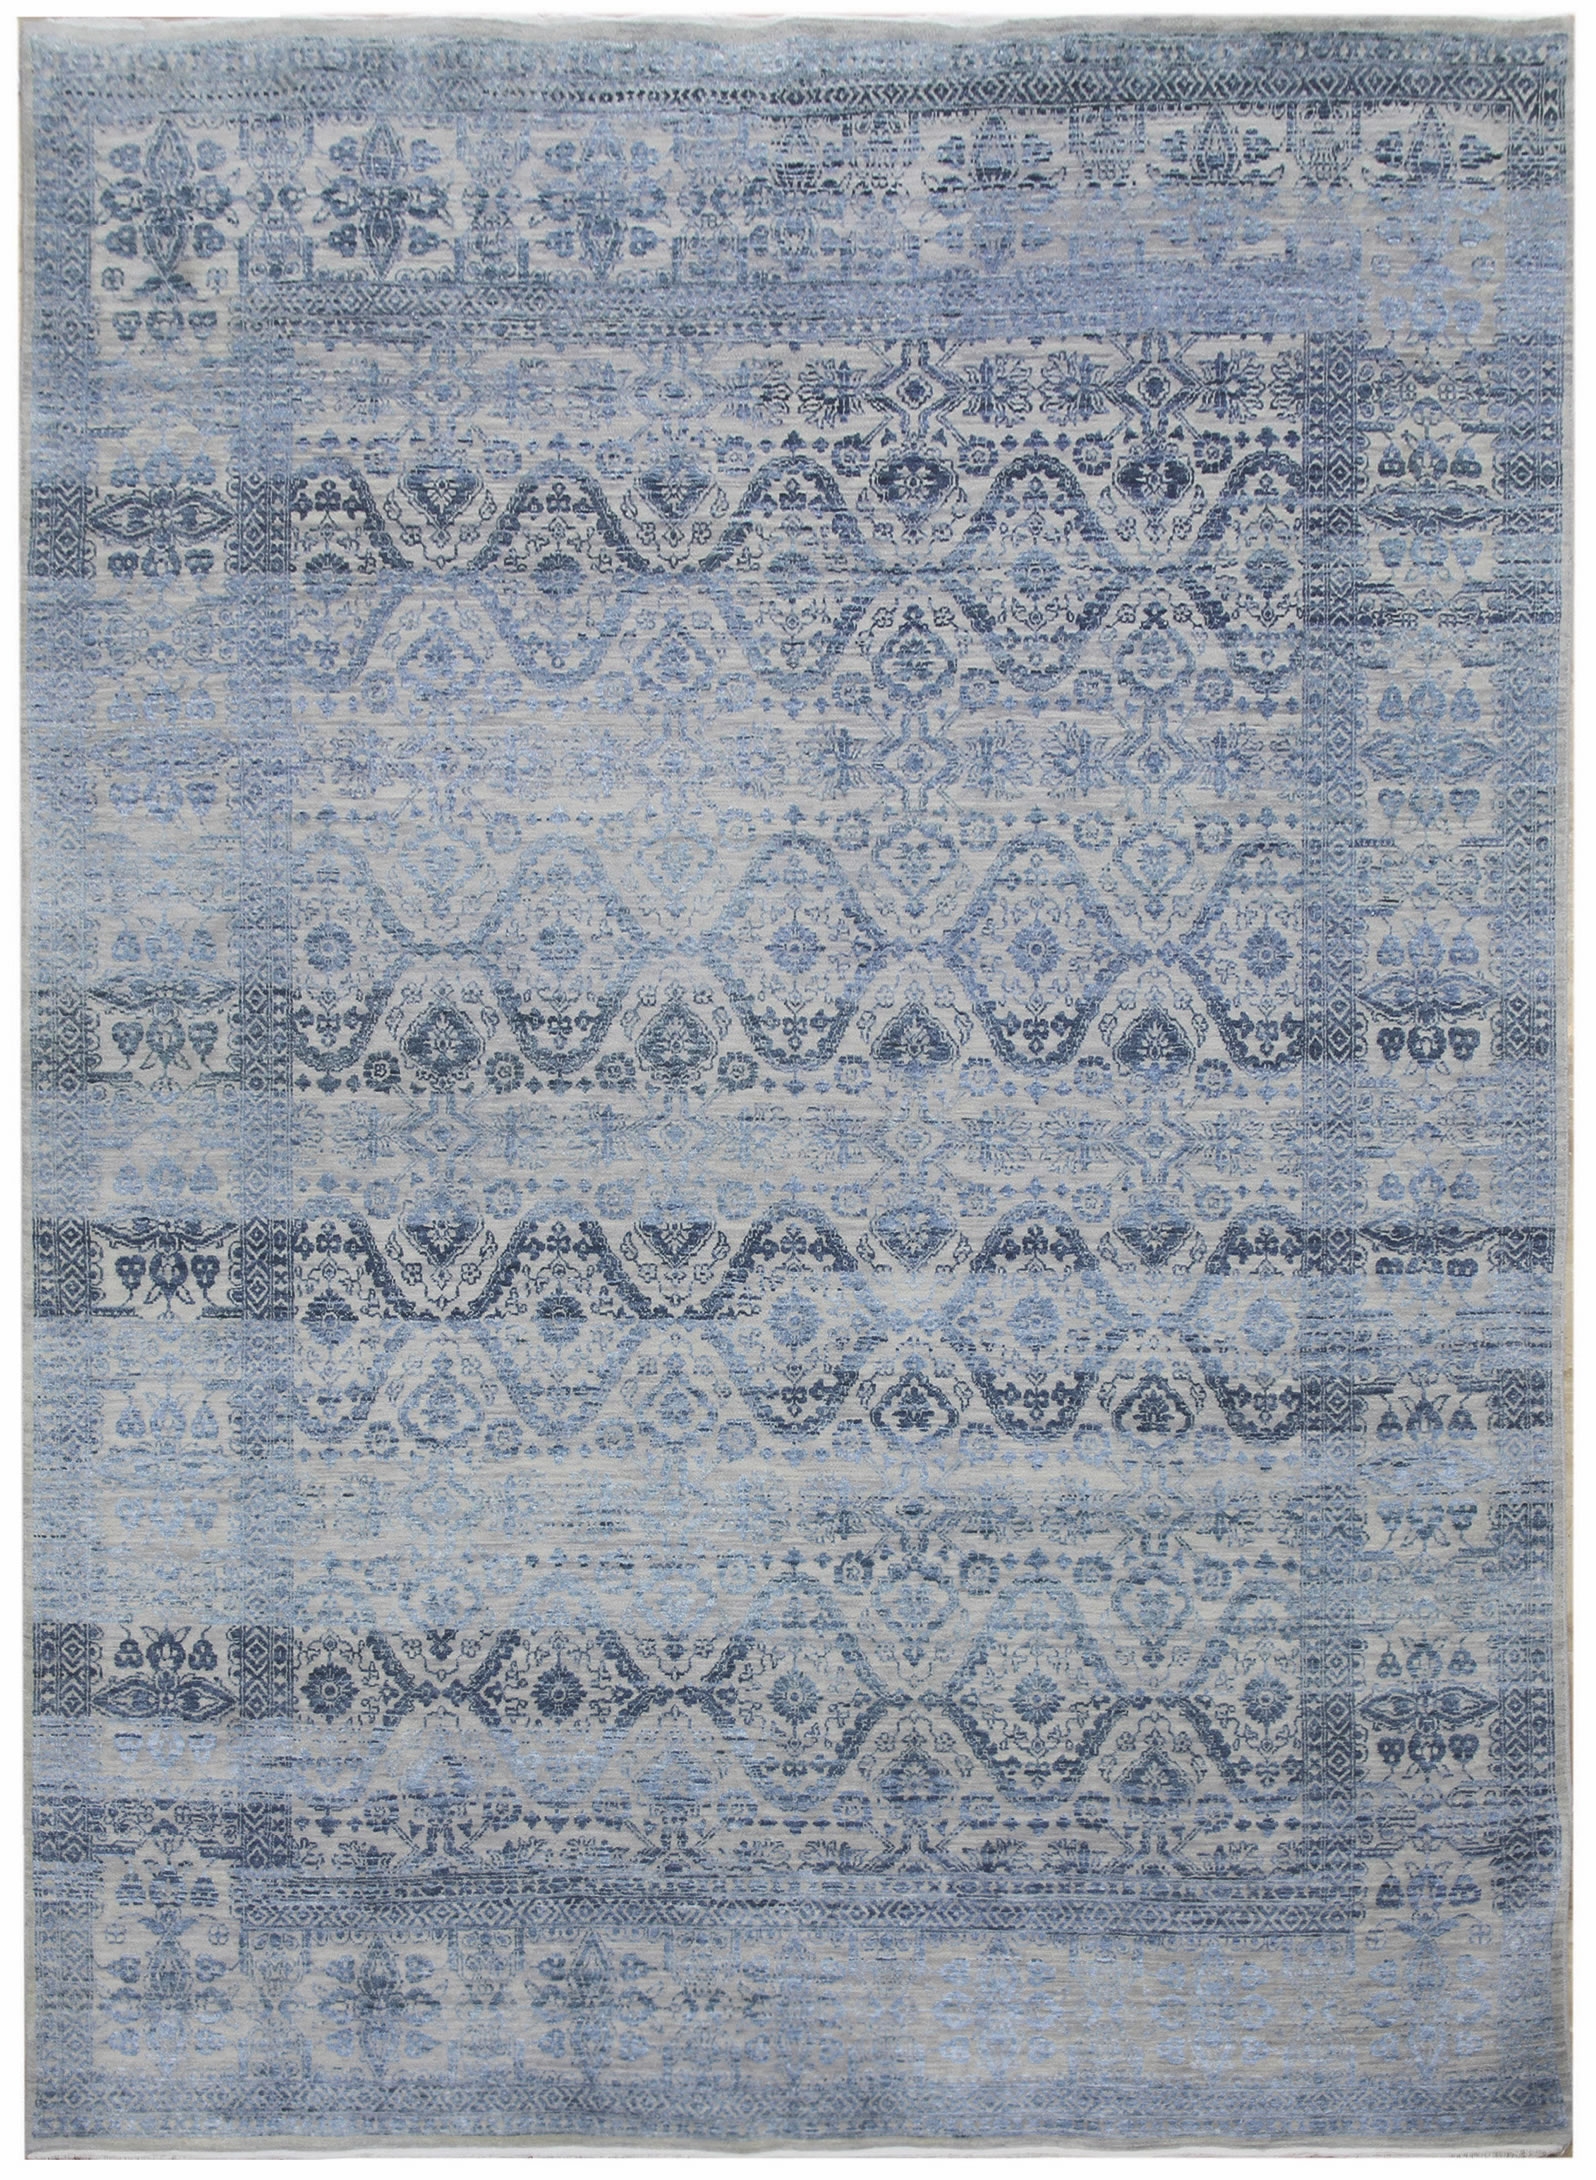 Ručne viazaný kusový koberec Diamond DC-HALI B Silver / blue - 140x200 cm Diamond Carpets koberce 